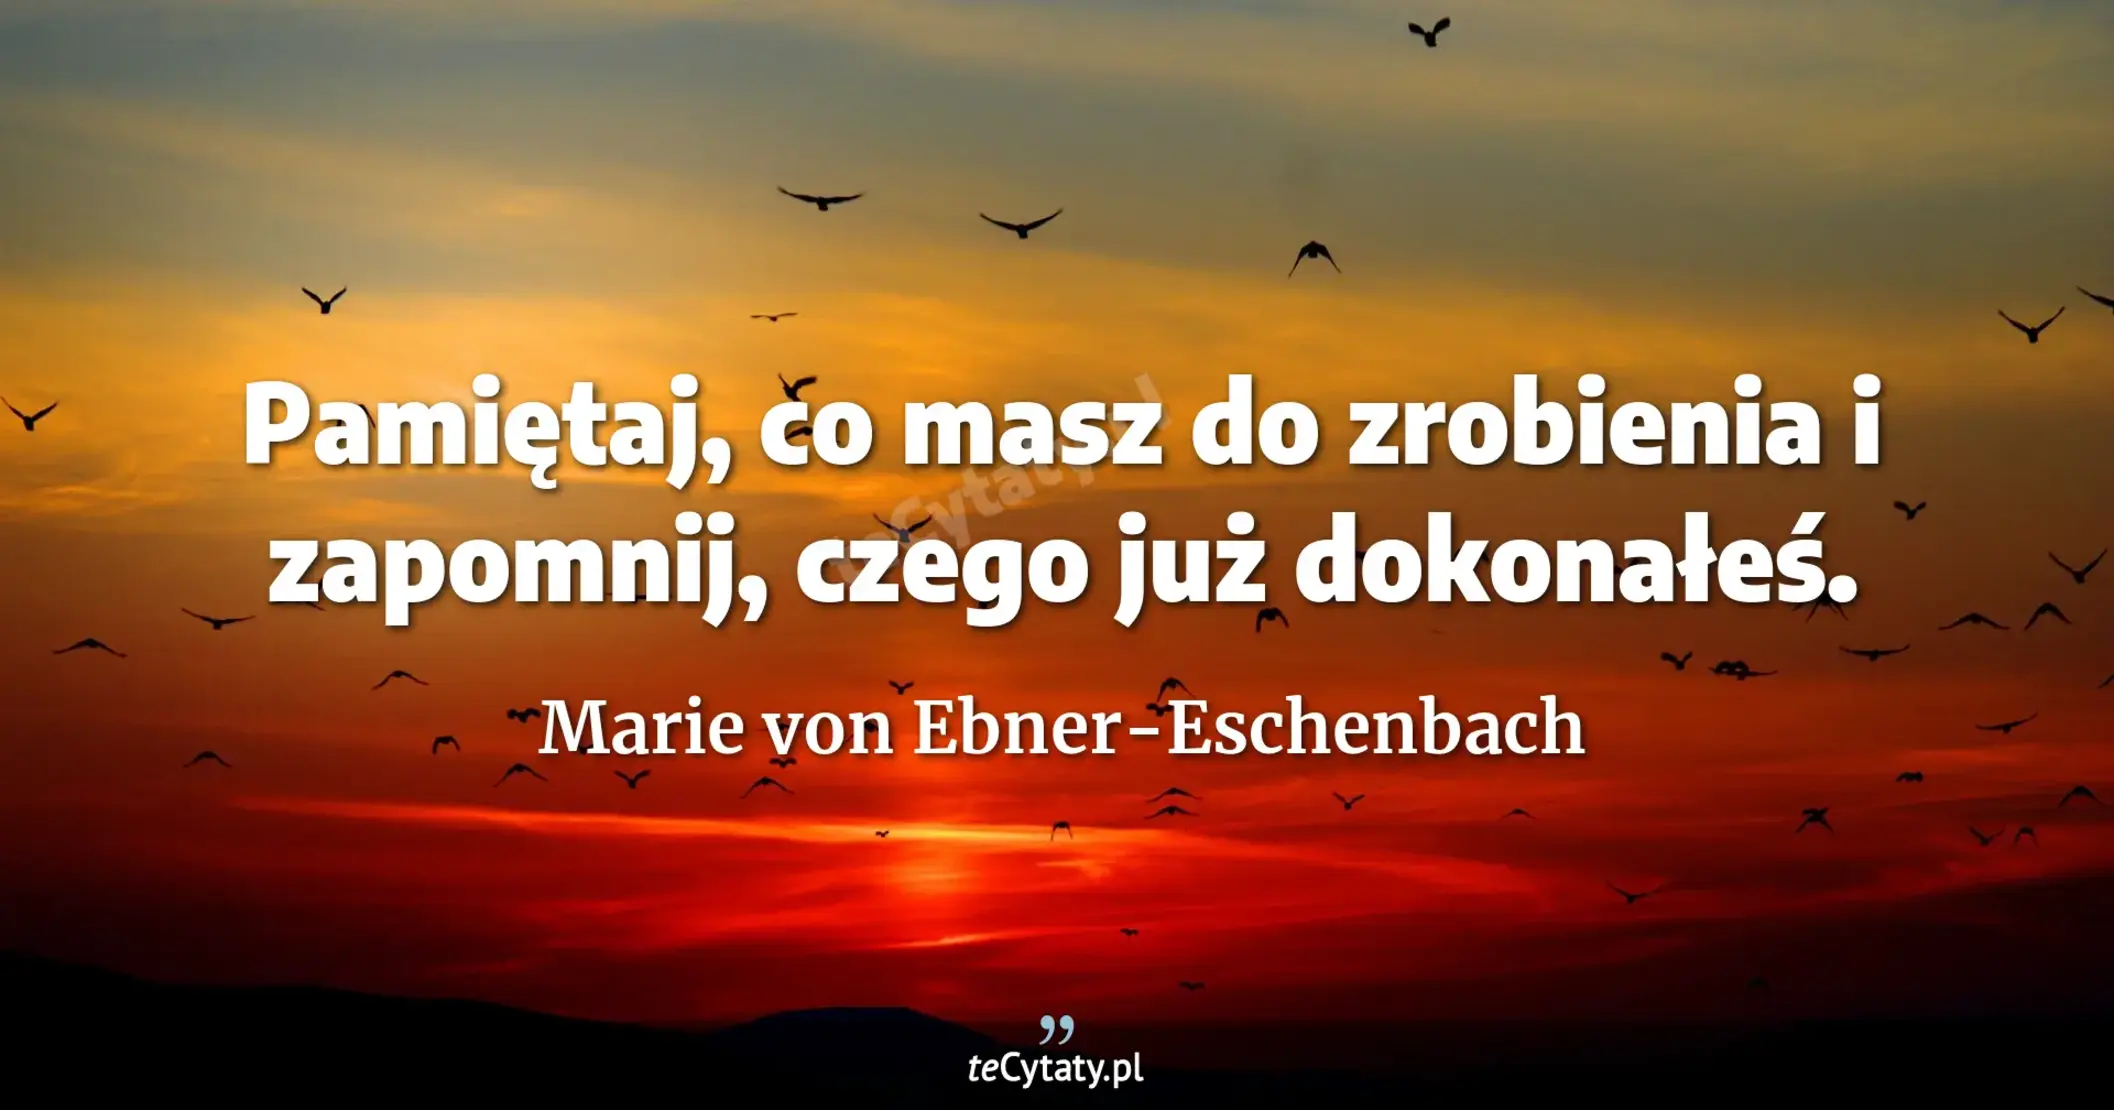 Pamiętaj, co masz do zrobienia i zapomnij, czego już dokonałeś. - Marie von Ebner-Eschenbach